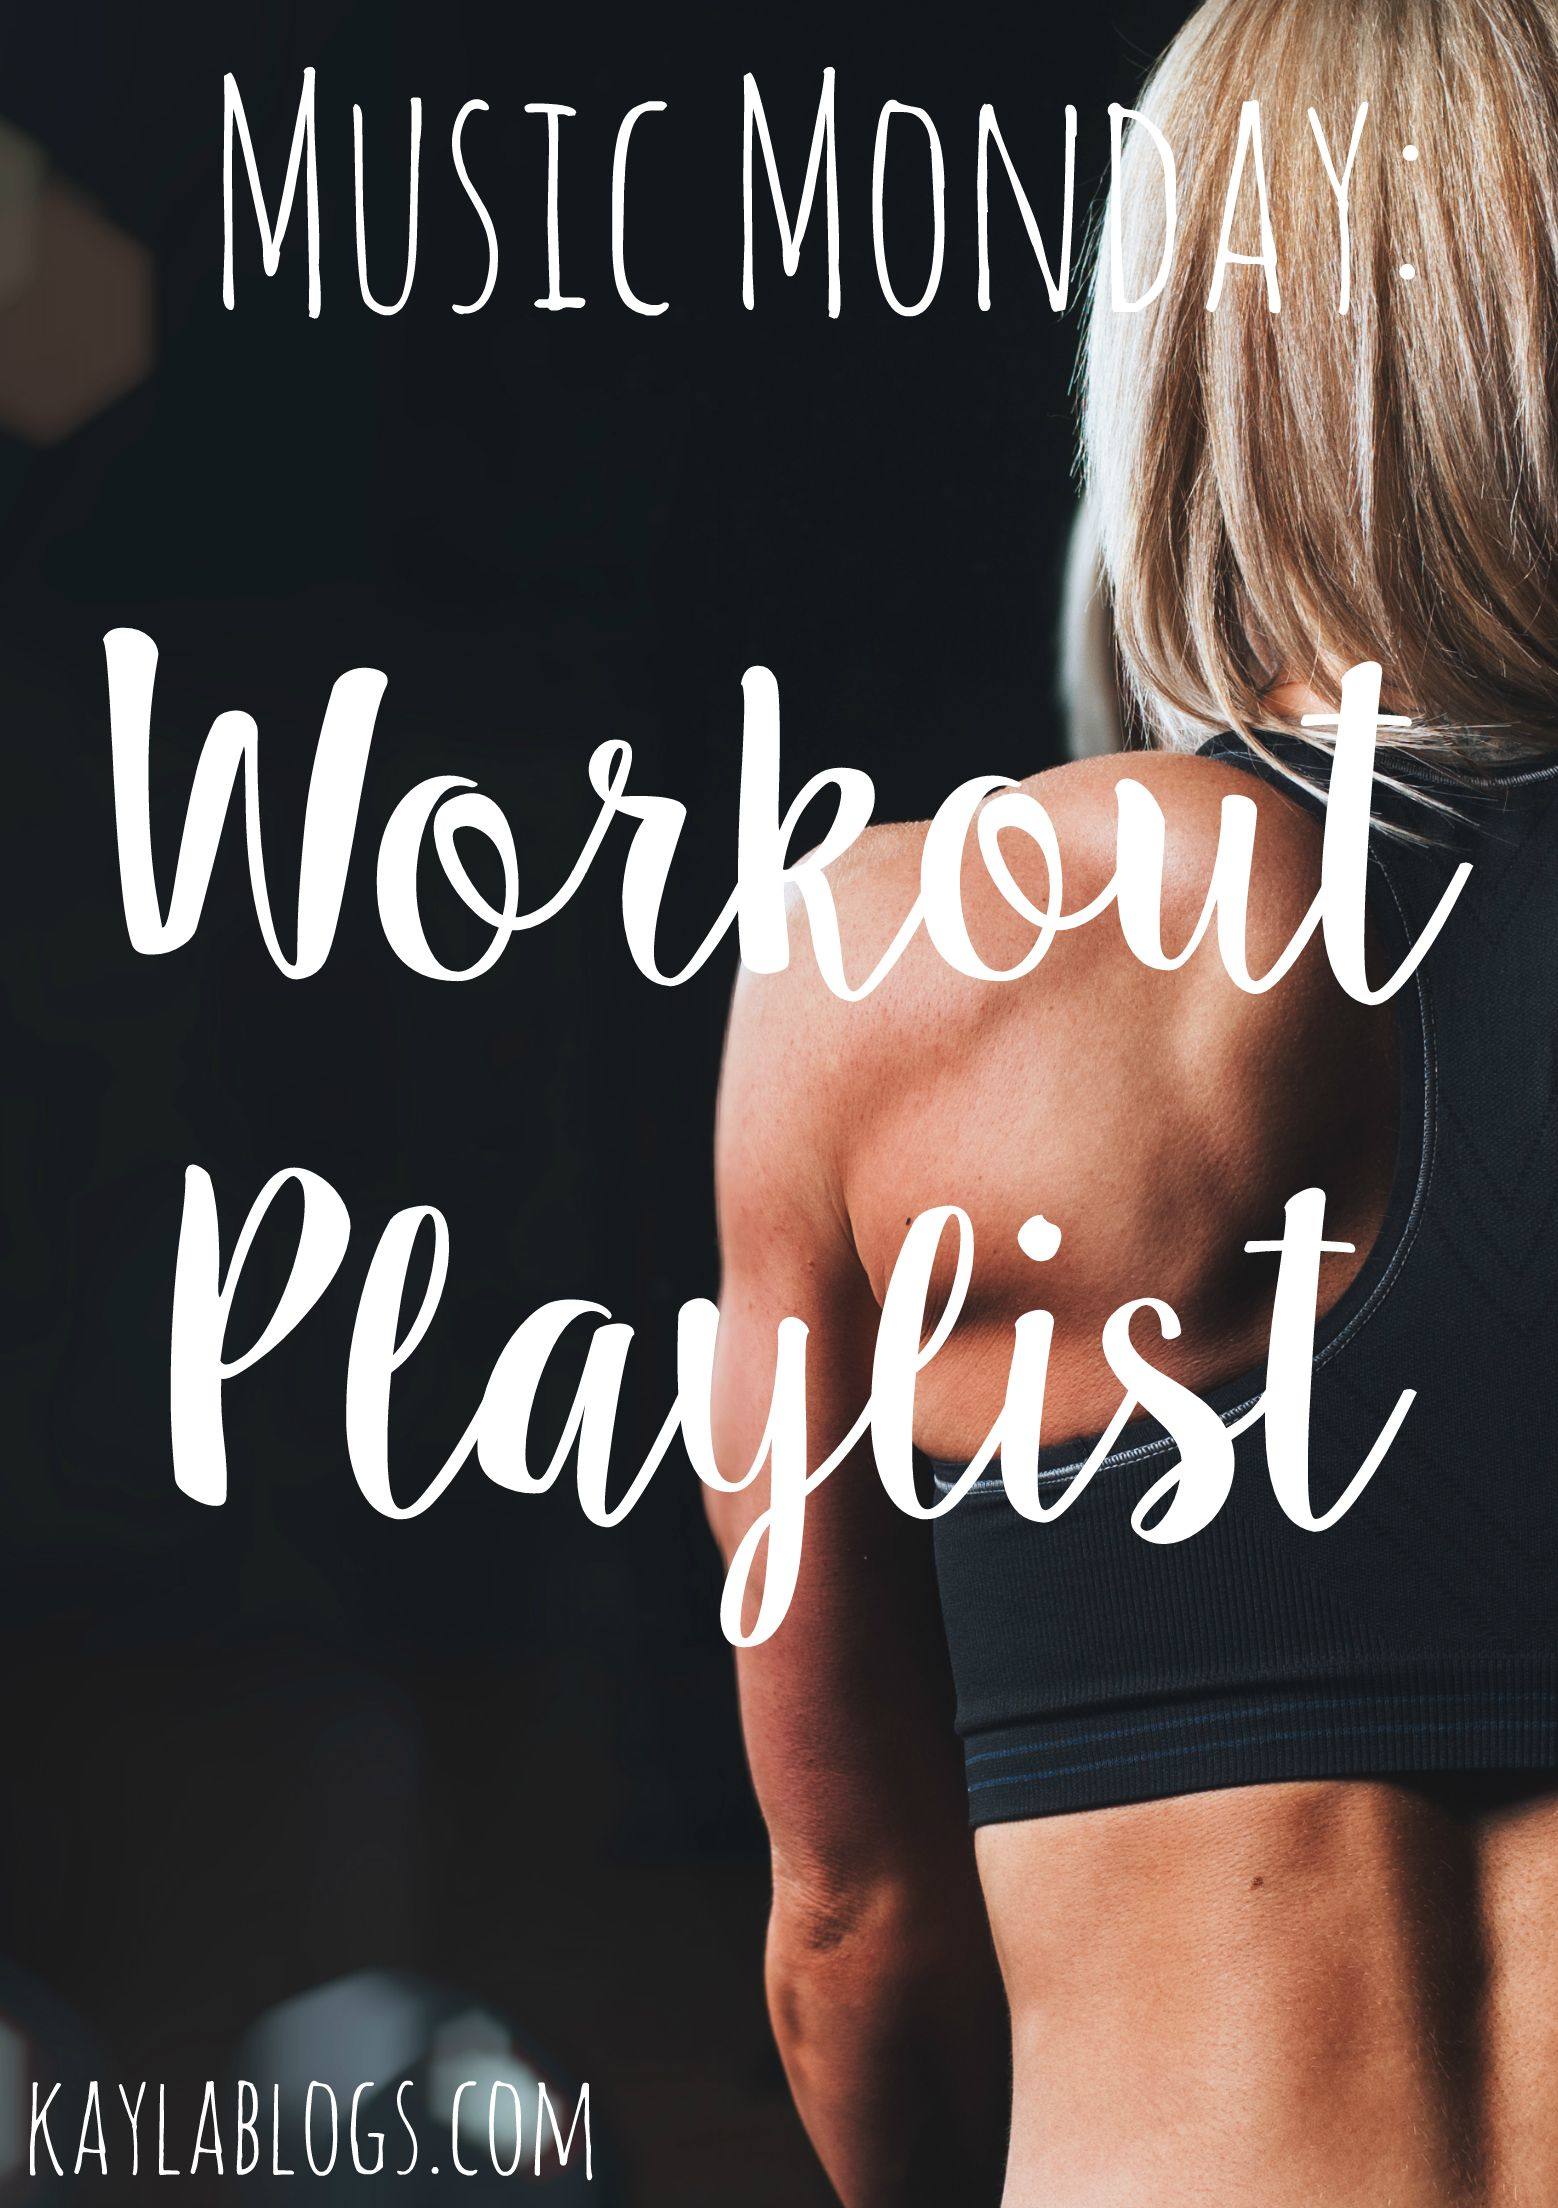 Music Monday: Workout Playlist - Kayla Blogs